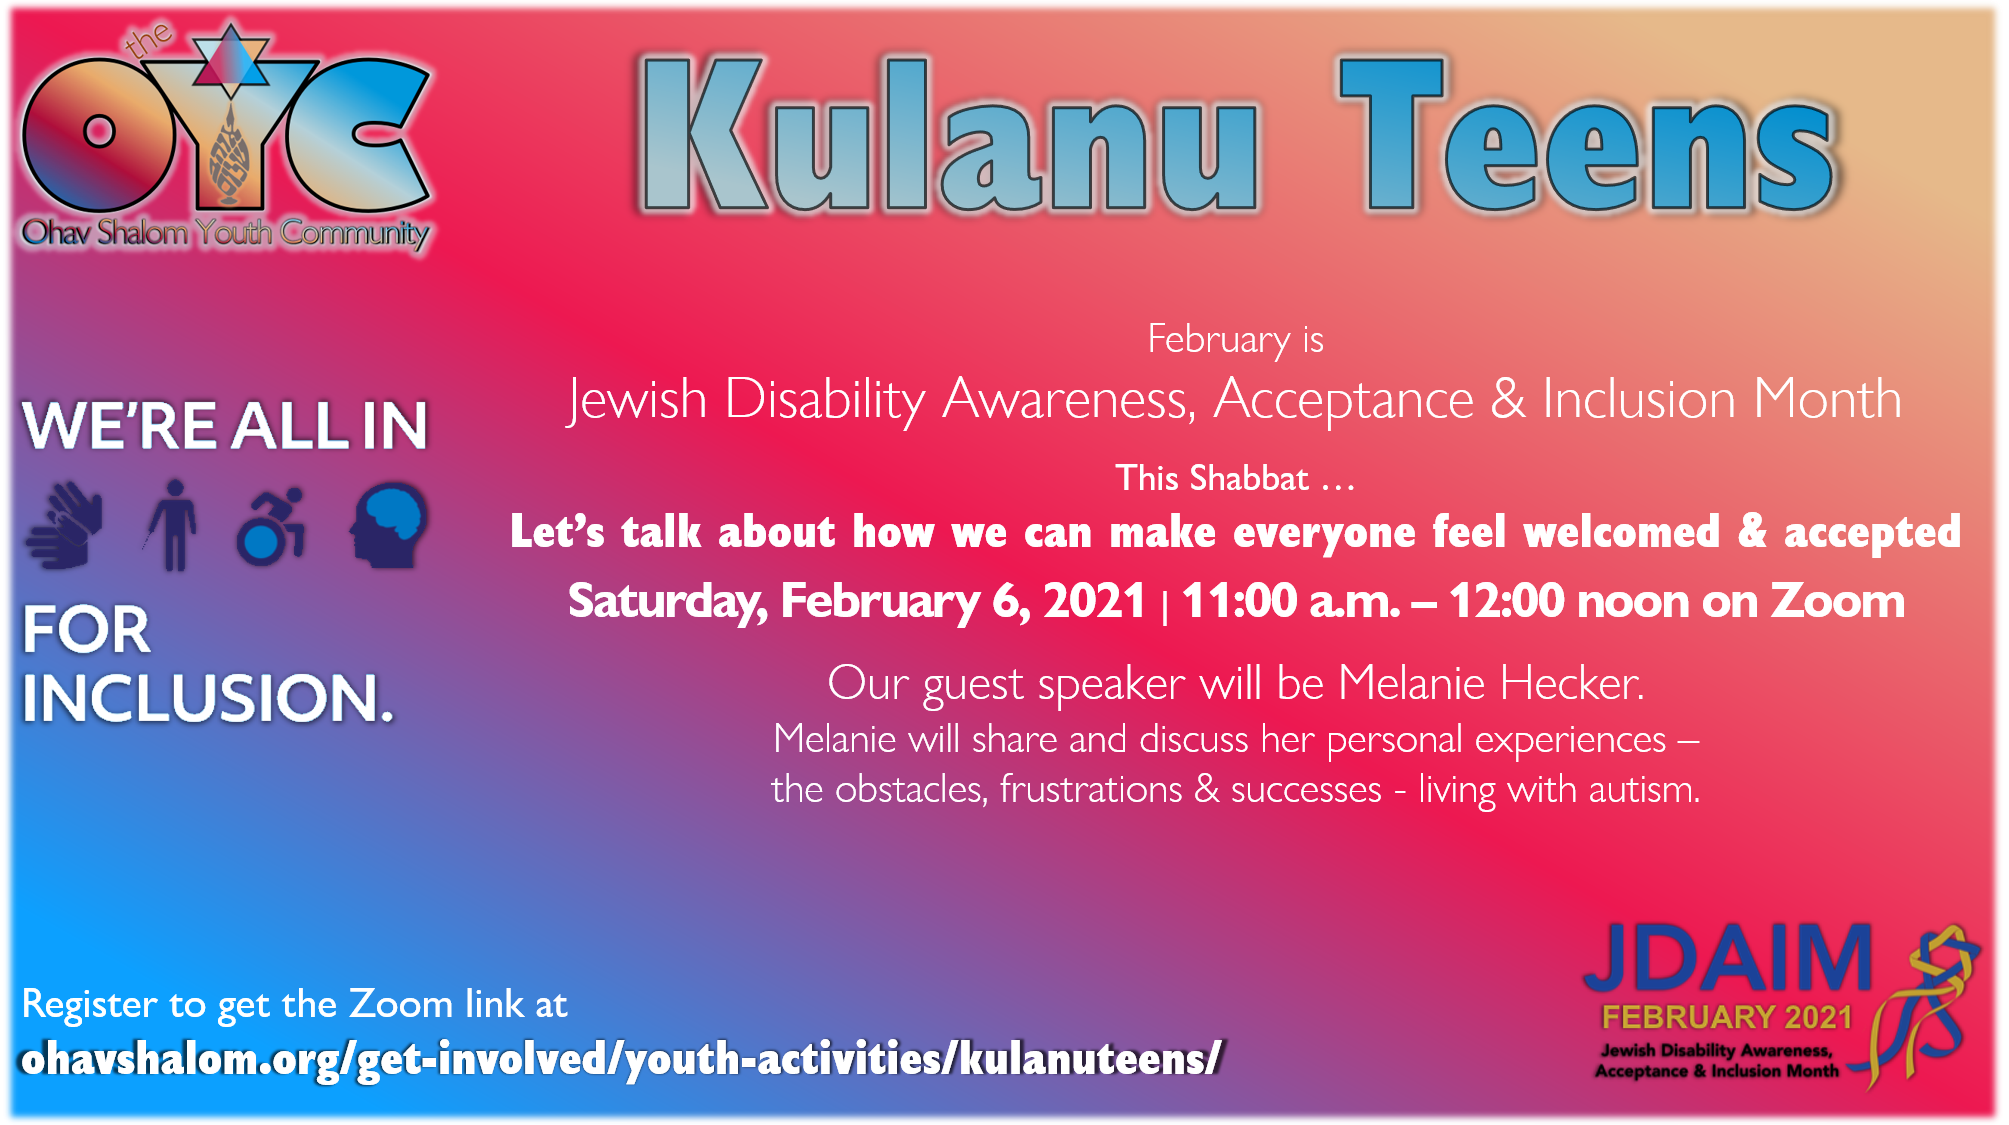 Kulanu Teens: Jewish Disability Awareness, Acceptance & Inclusion Month